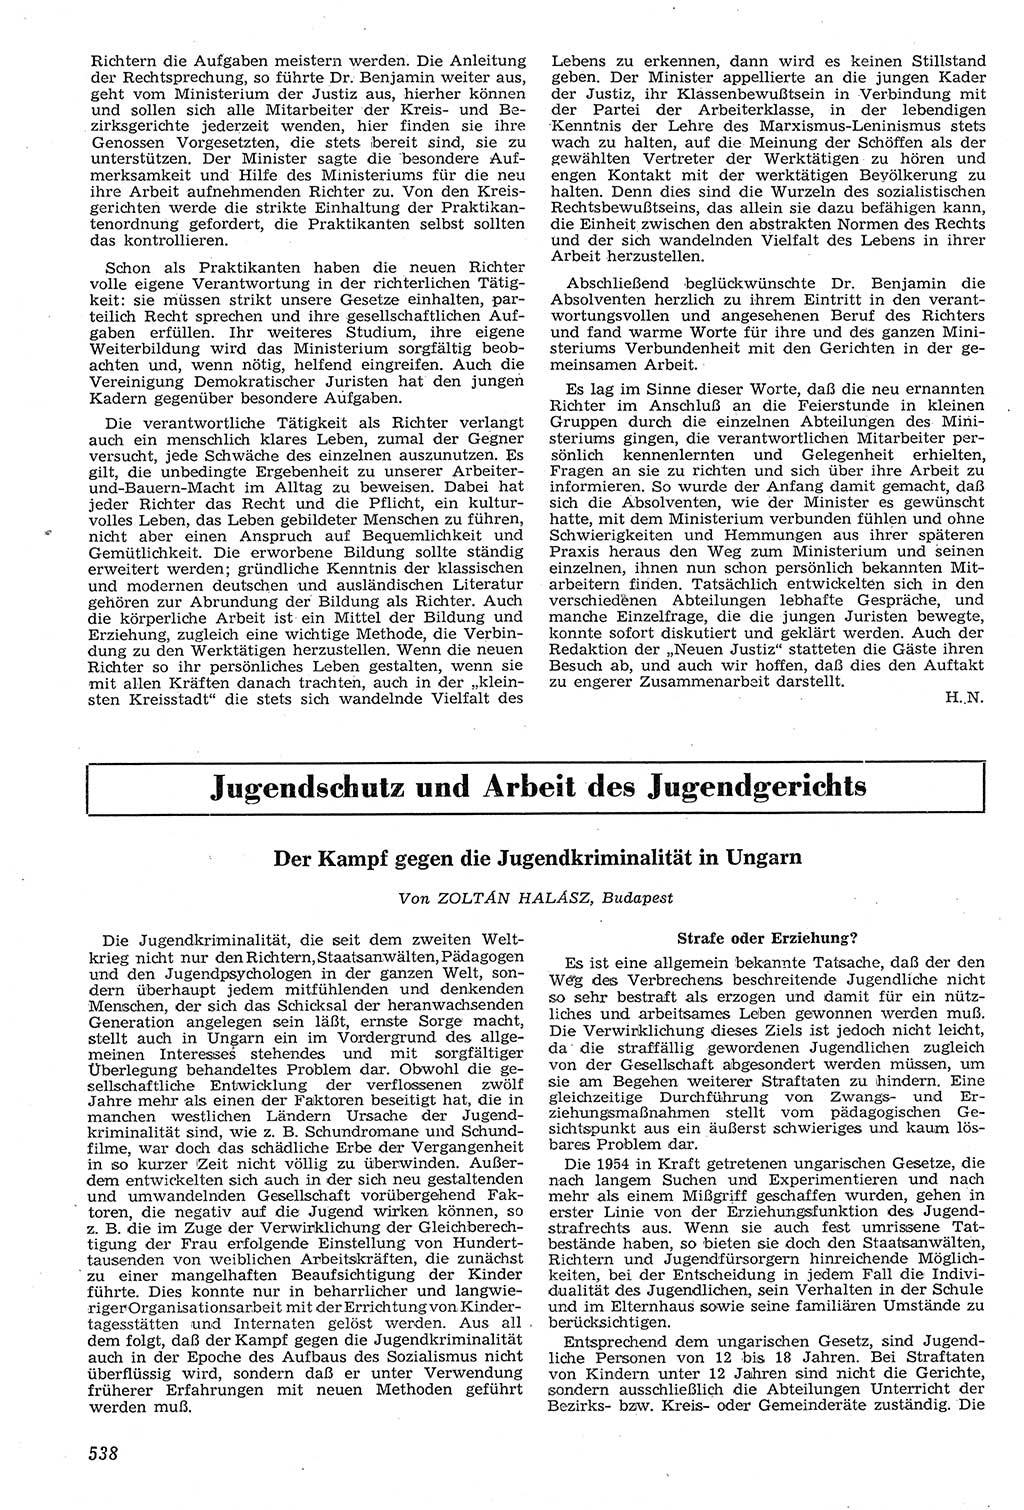 Neue Justiz (NJ), Zeitschrift für Recht und Rechtswissenschaft [Deutsche Demokratische Republik (DDR)], 11. Jahrgang 1957, Seite 538 (NJ DDR 1957, S. 538)